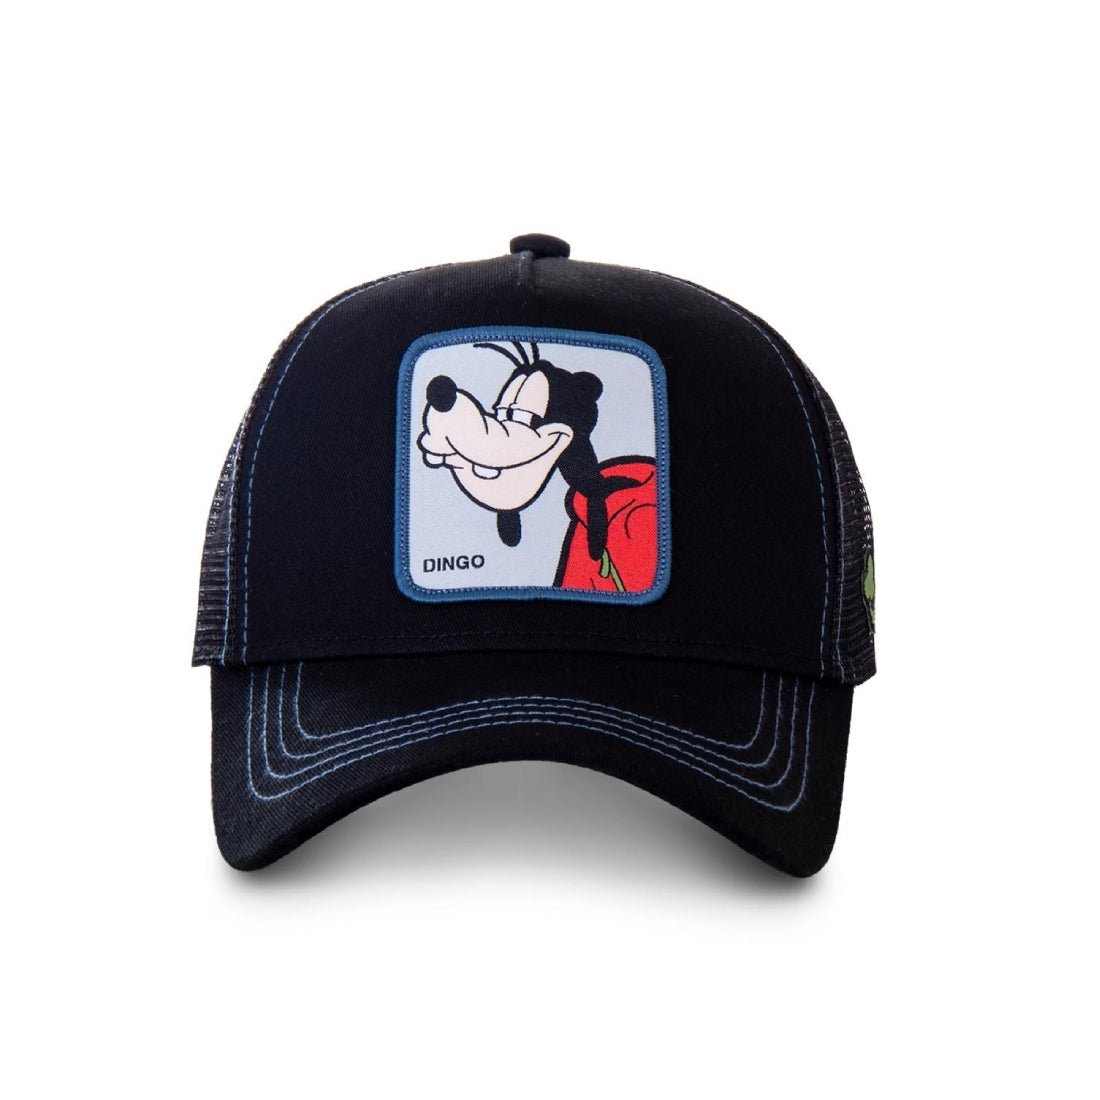 Queue Caps Capslab Disney Goofy Cap - Black - قبعة - Store 974 | ستور ٩٧٤